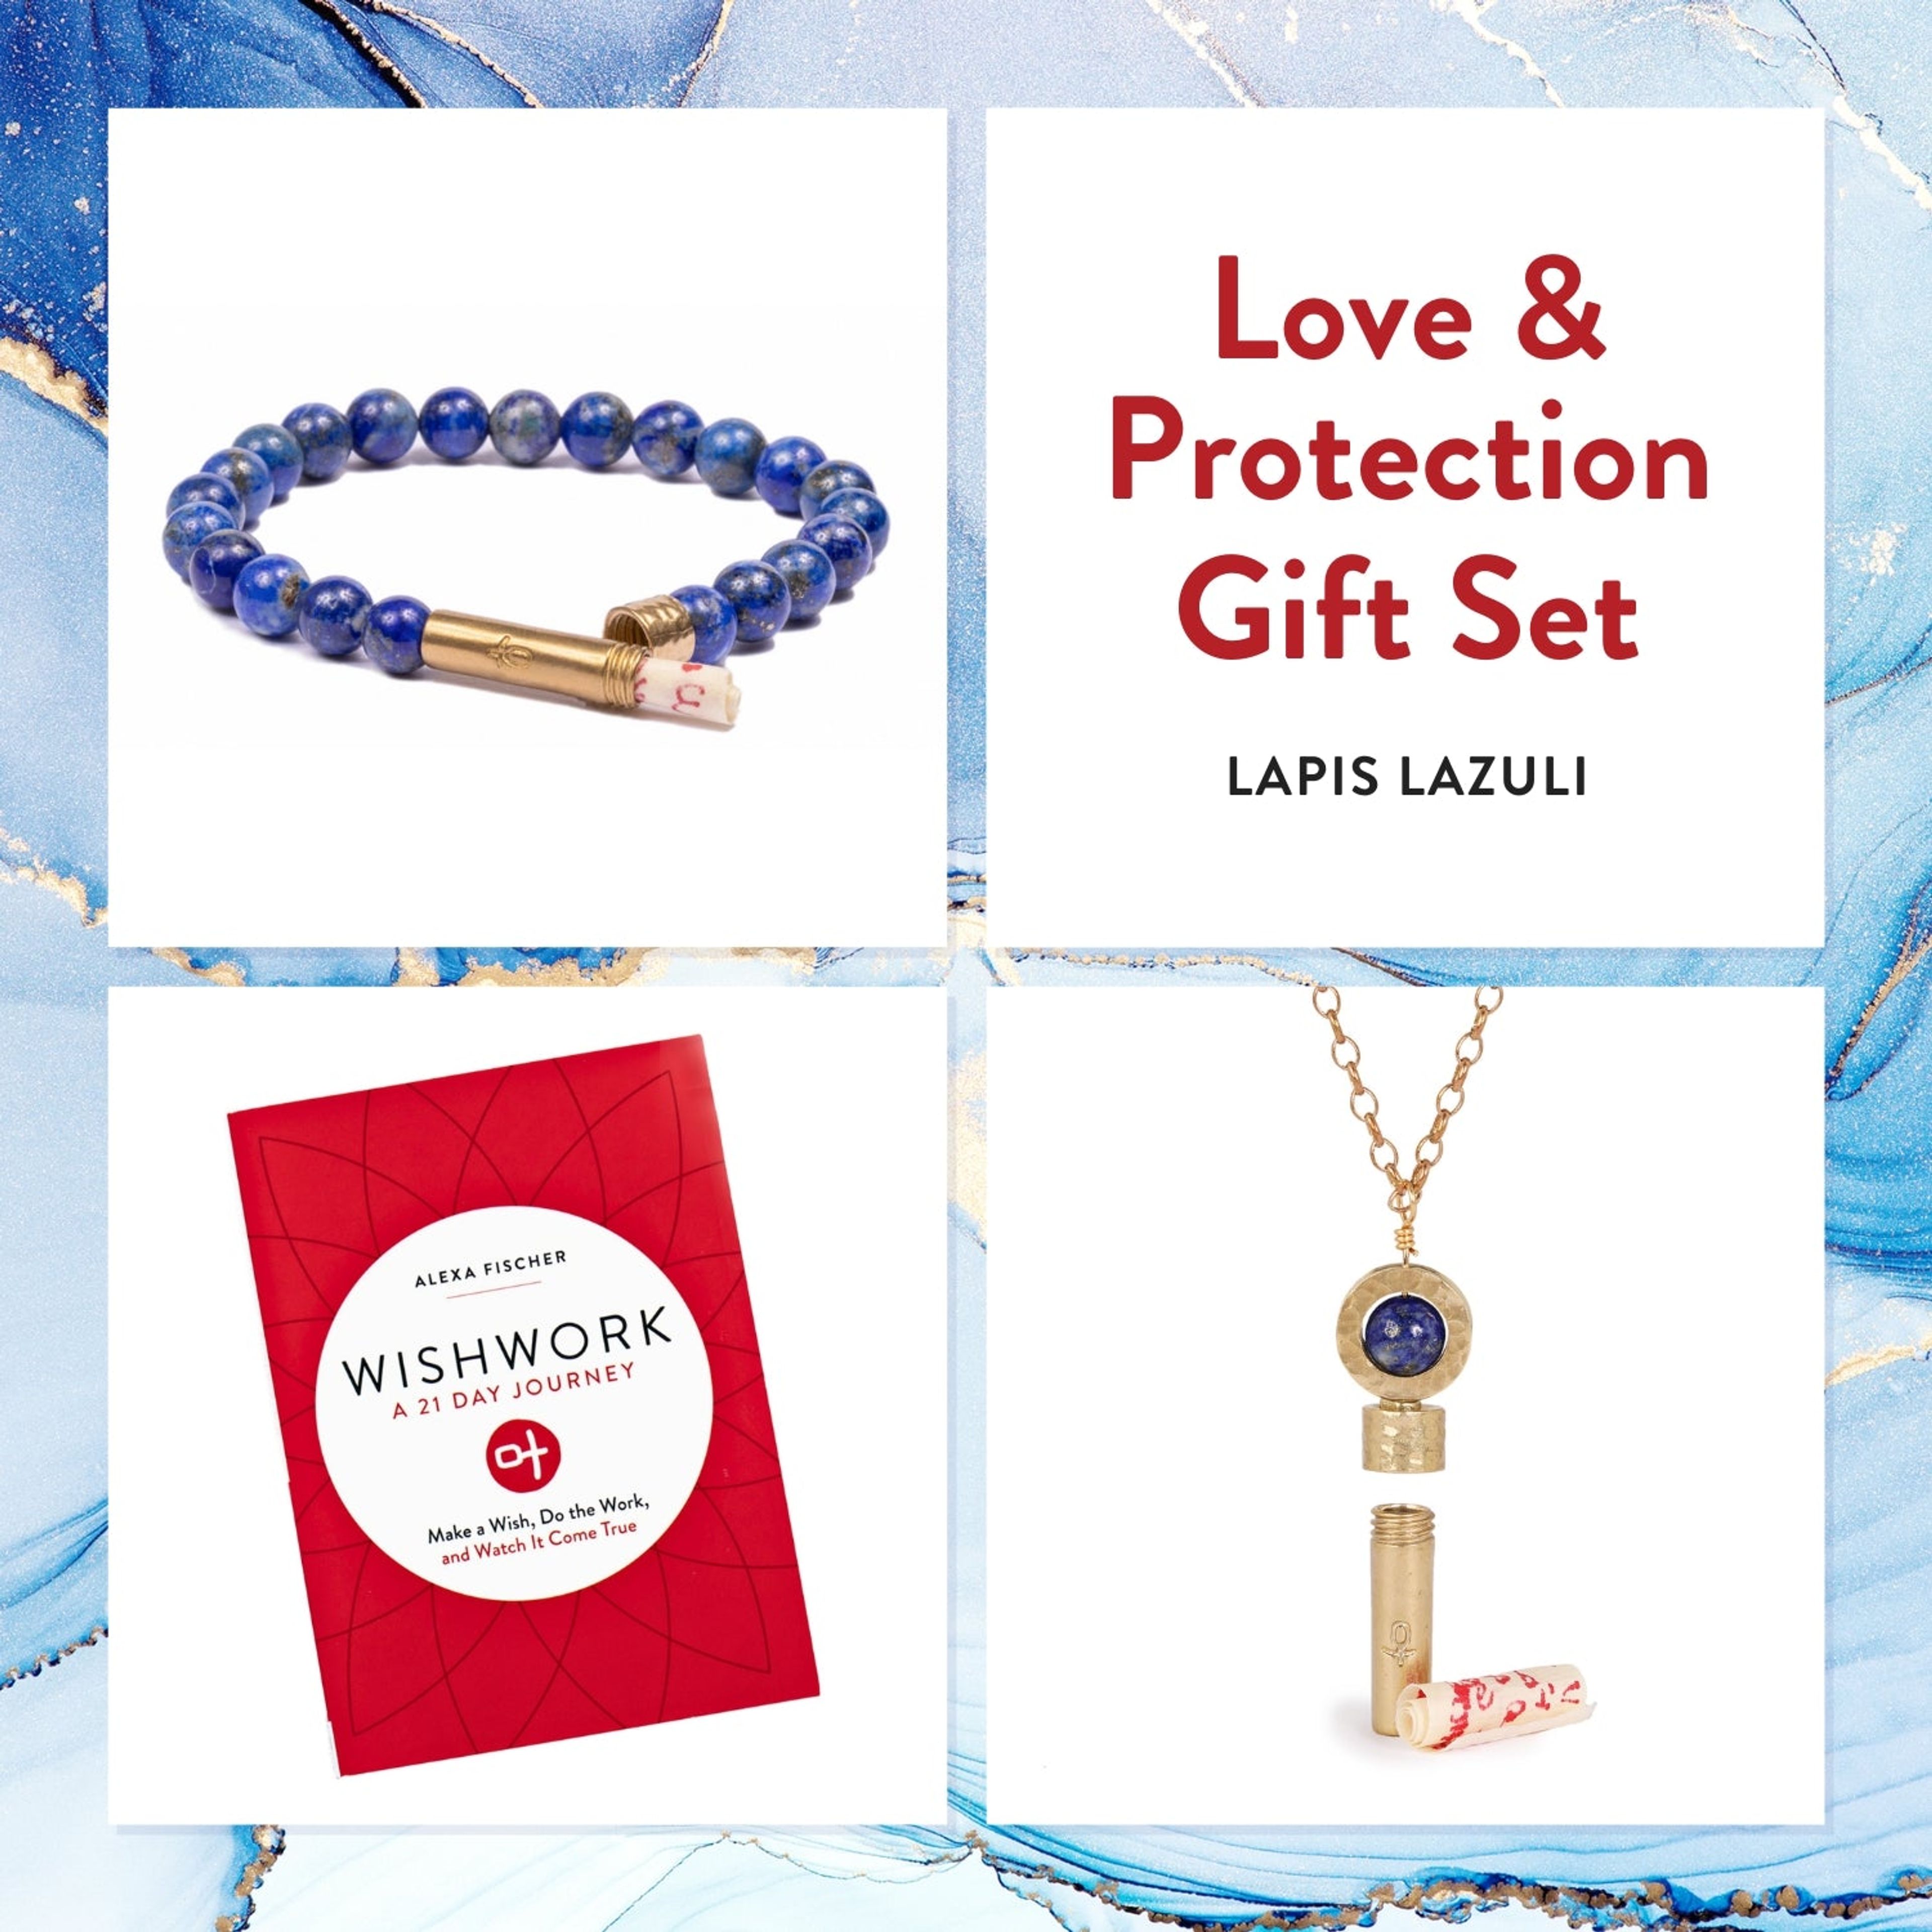 Lapis Lazuli Intention Jewelry Gift Set